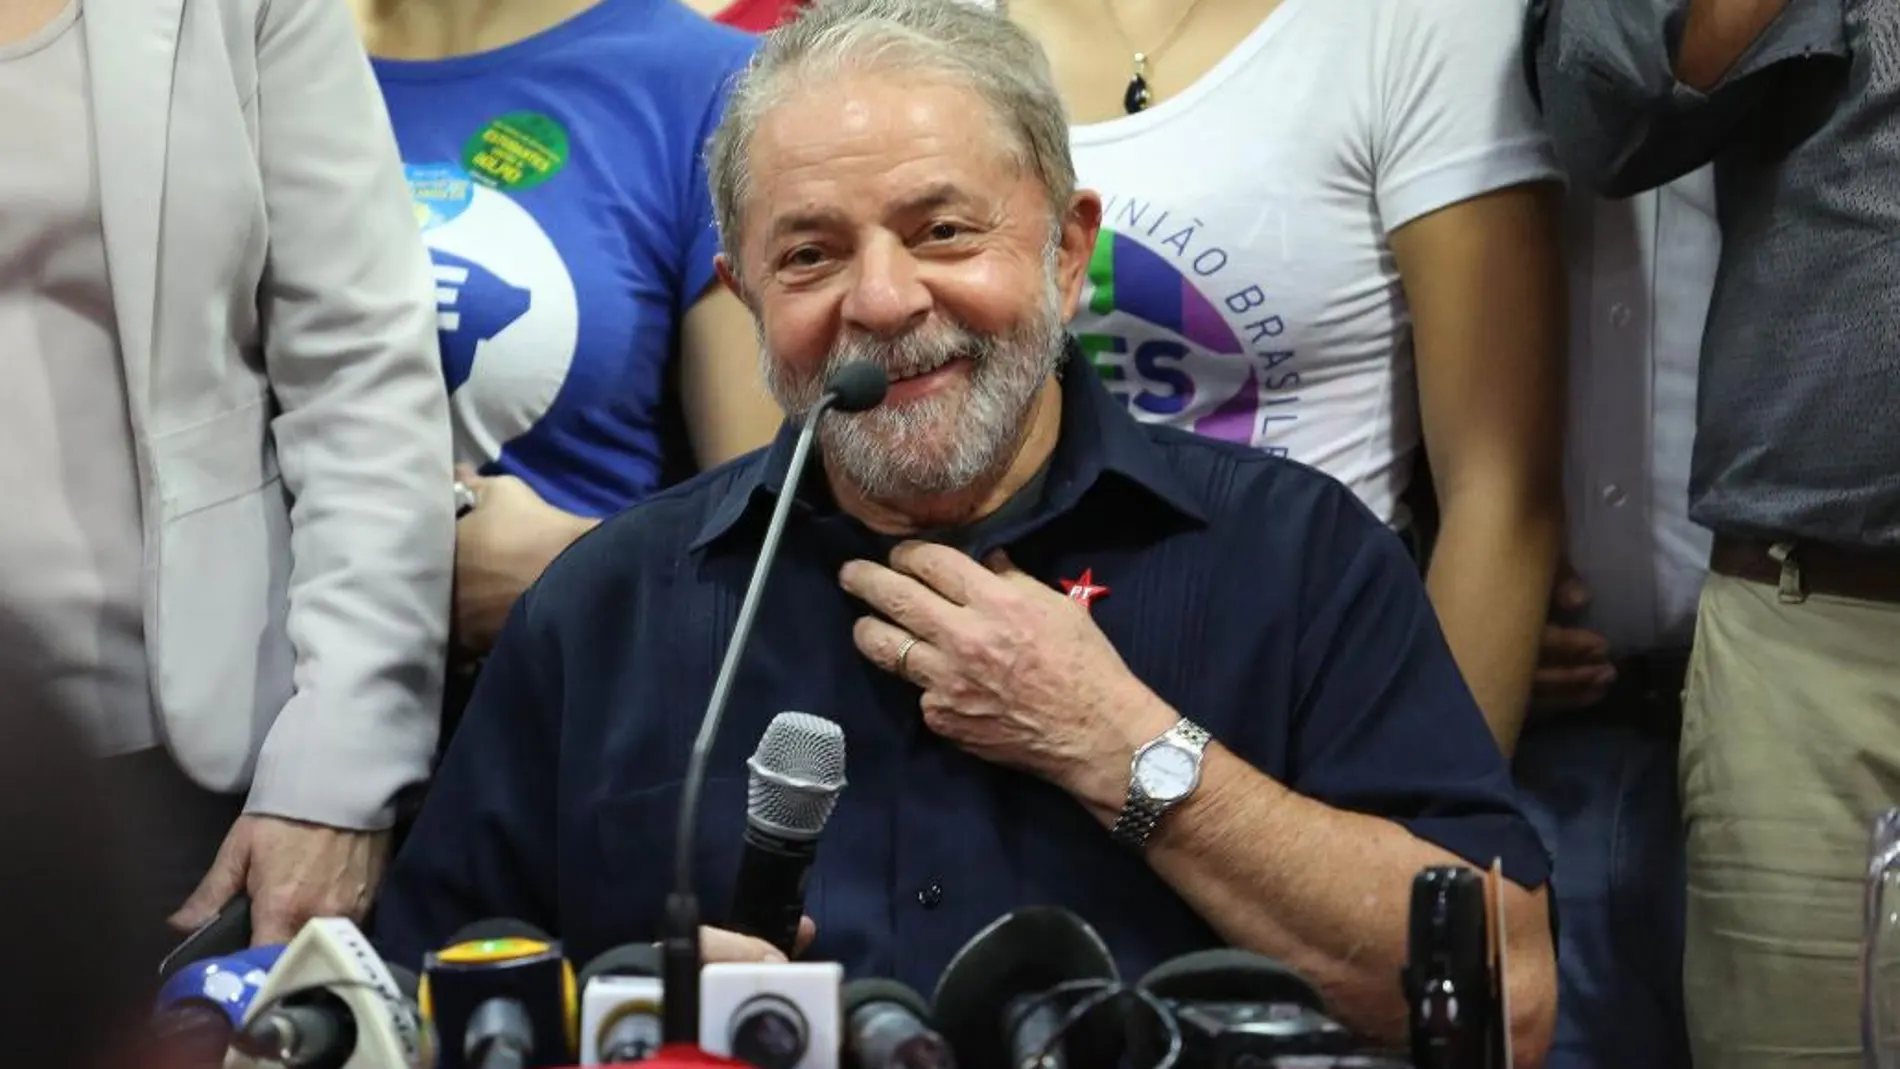 Fotografía de archivo fechada el viernes 4 de marzo de 2016, que muestra al expresidente brasileño Luiz Inácio Lula da Silva